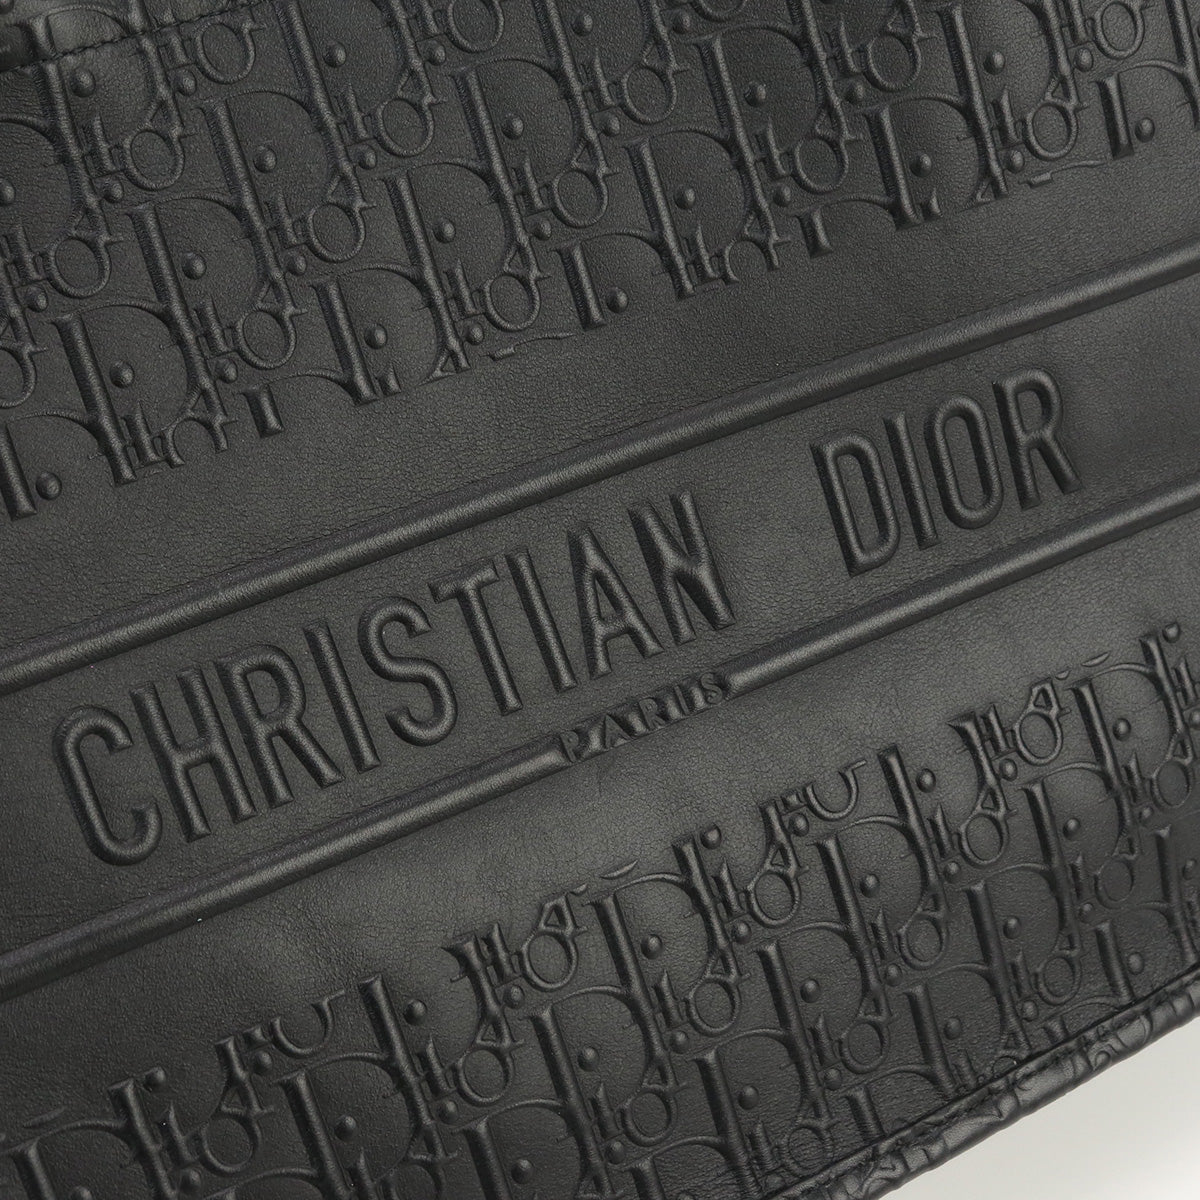 Christian Dior クリスチャンディオール ブックトート ミディアムバッグ トートバッグ レザー【中古】 レディース